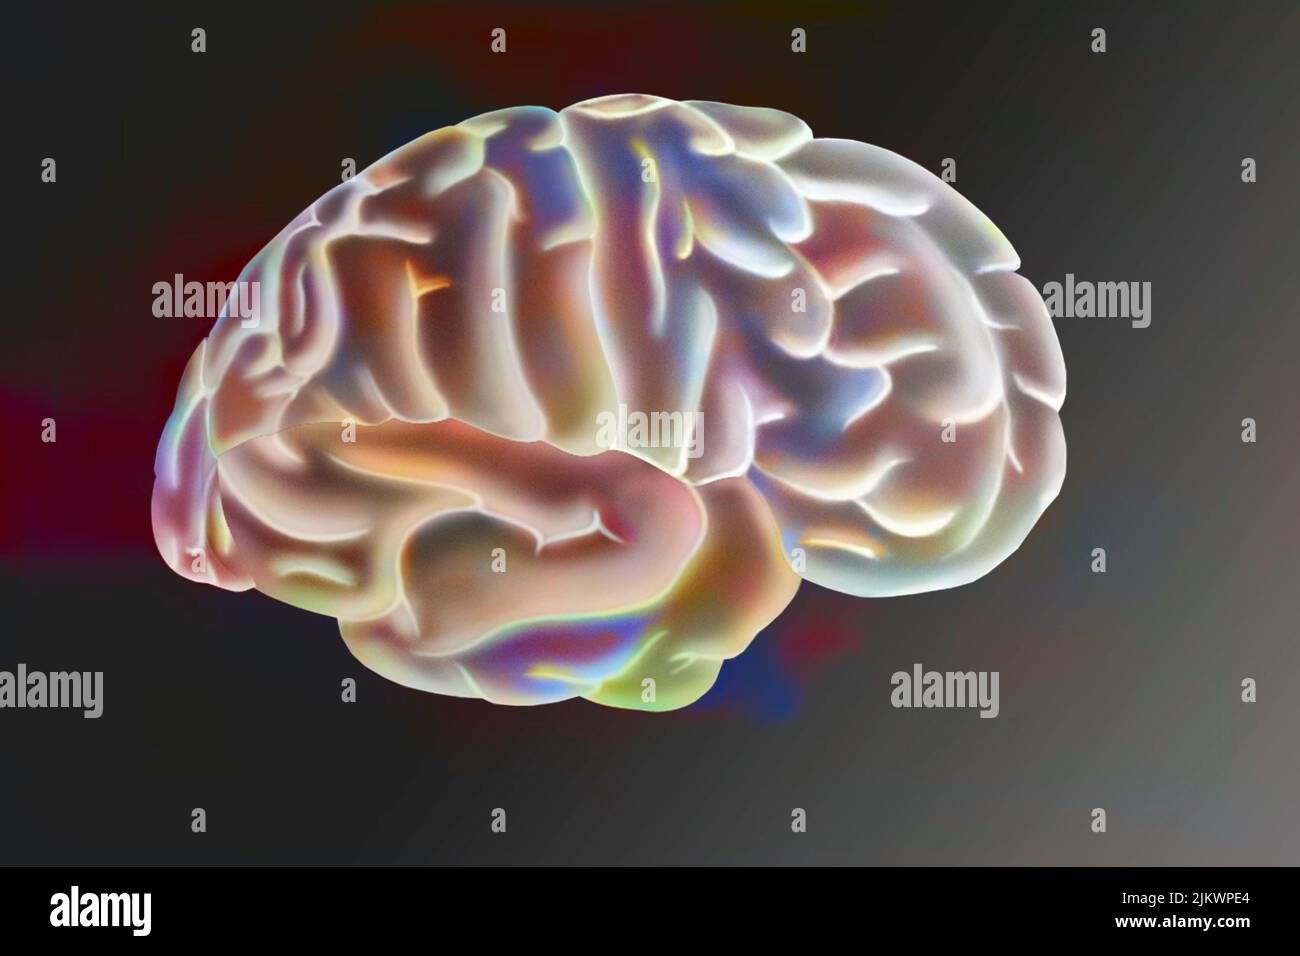 Dessin d'un cerveau humain et de ses différentes zones. Banque D'Images